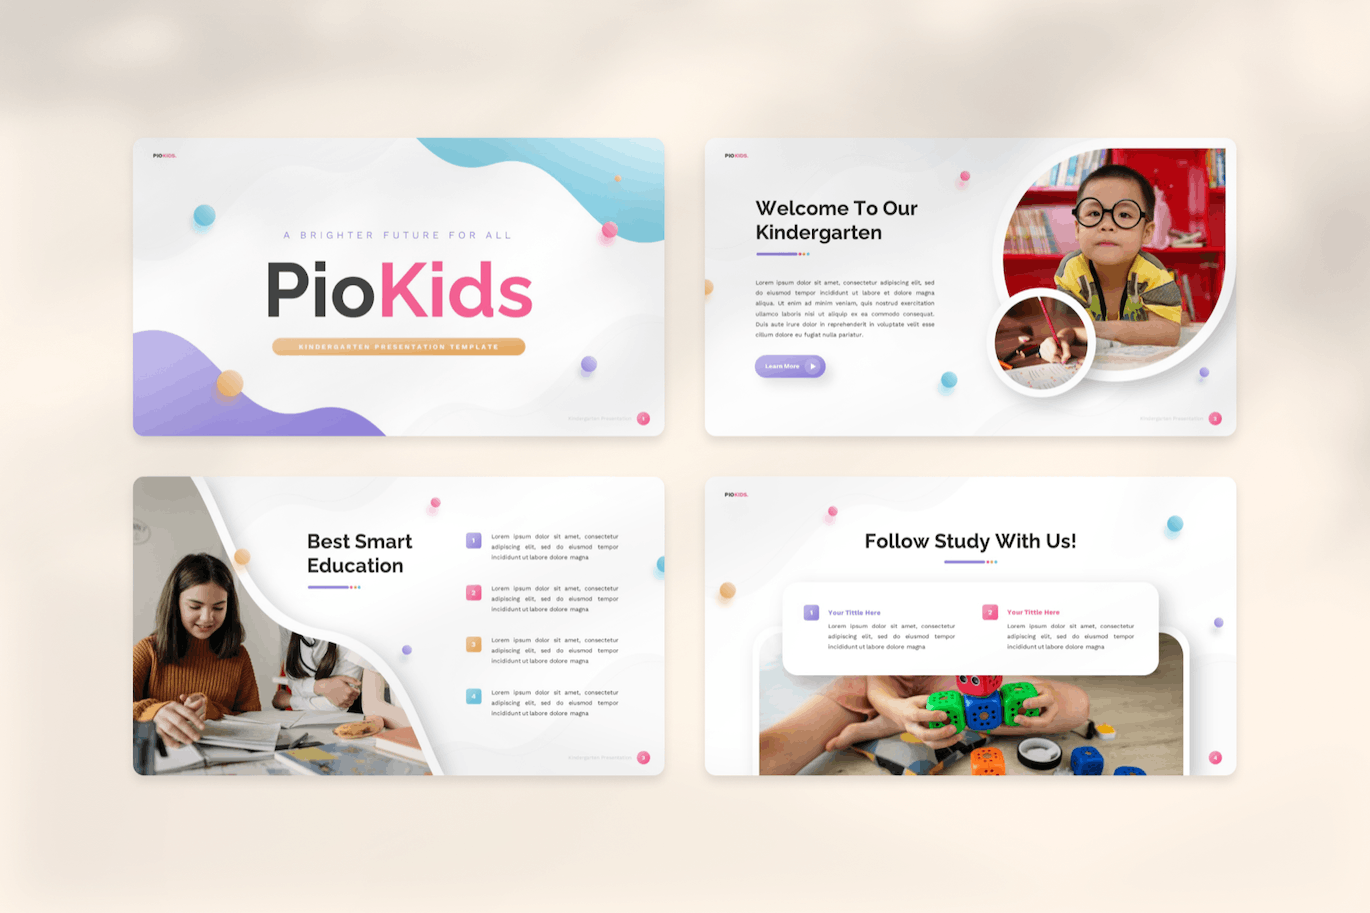 幼儿园和学前班介绍演示PPT模板 Piokids – Kindergarten & Preschool Powerpoint 幻灯图表 第3张